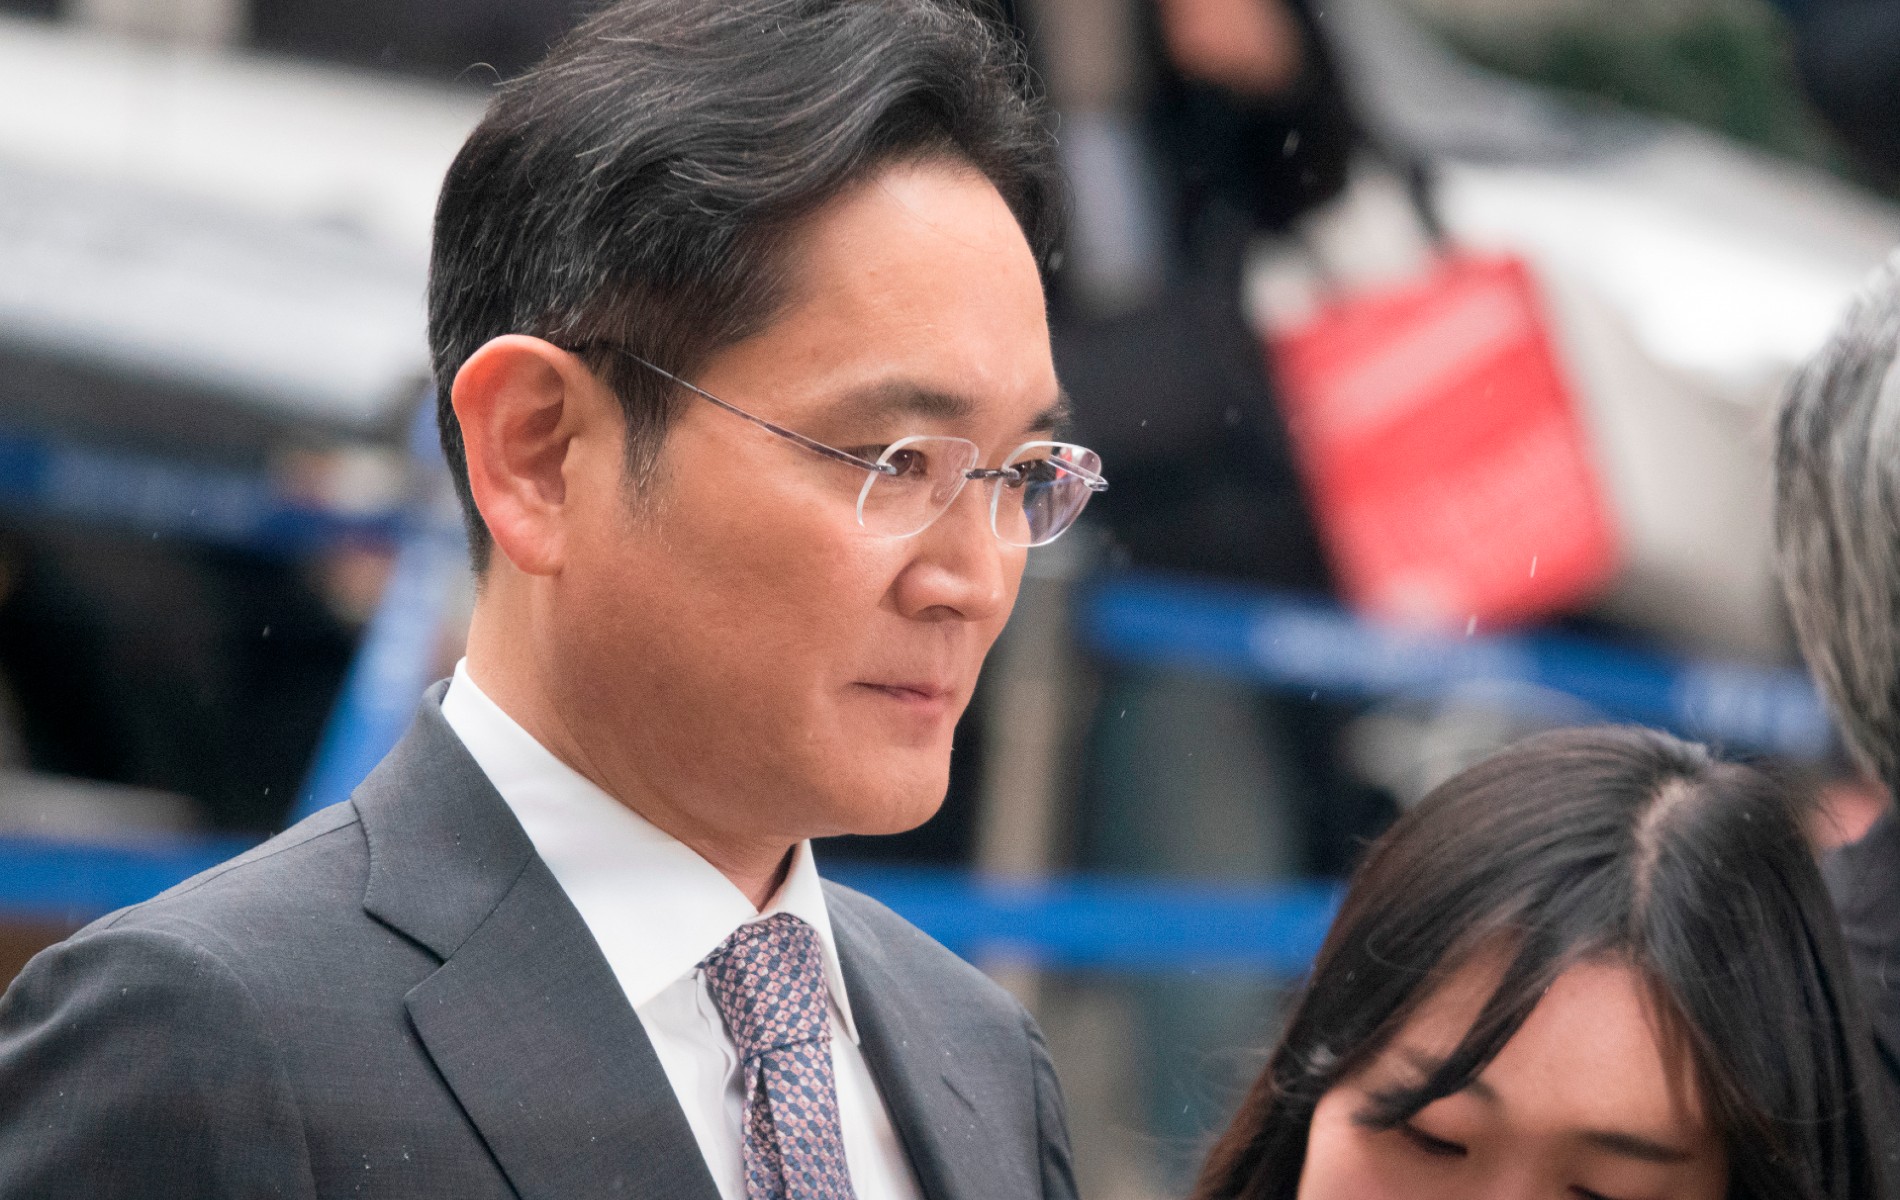 Scandale autour de la succession chez Samsung : son patron et héritier Lee Jae-yong acquitté